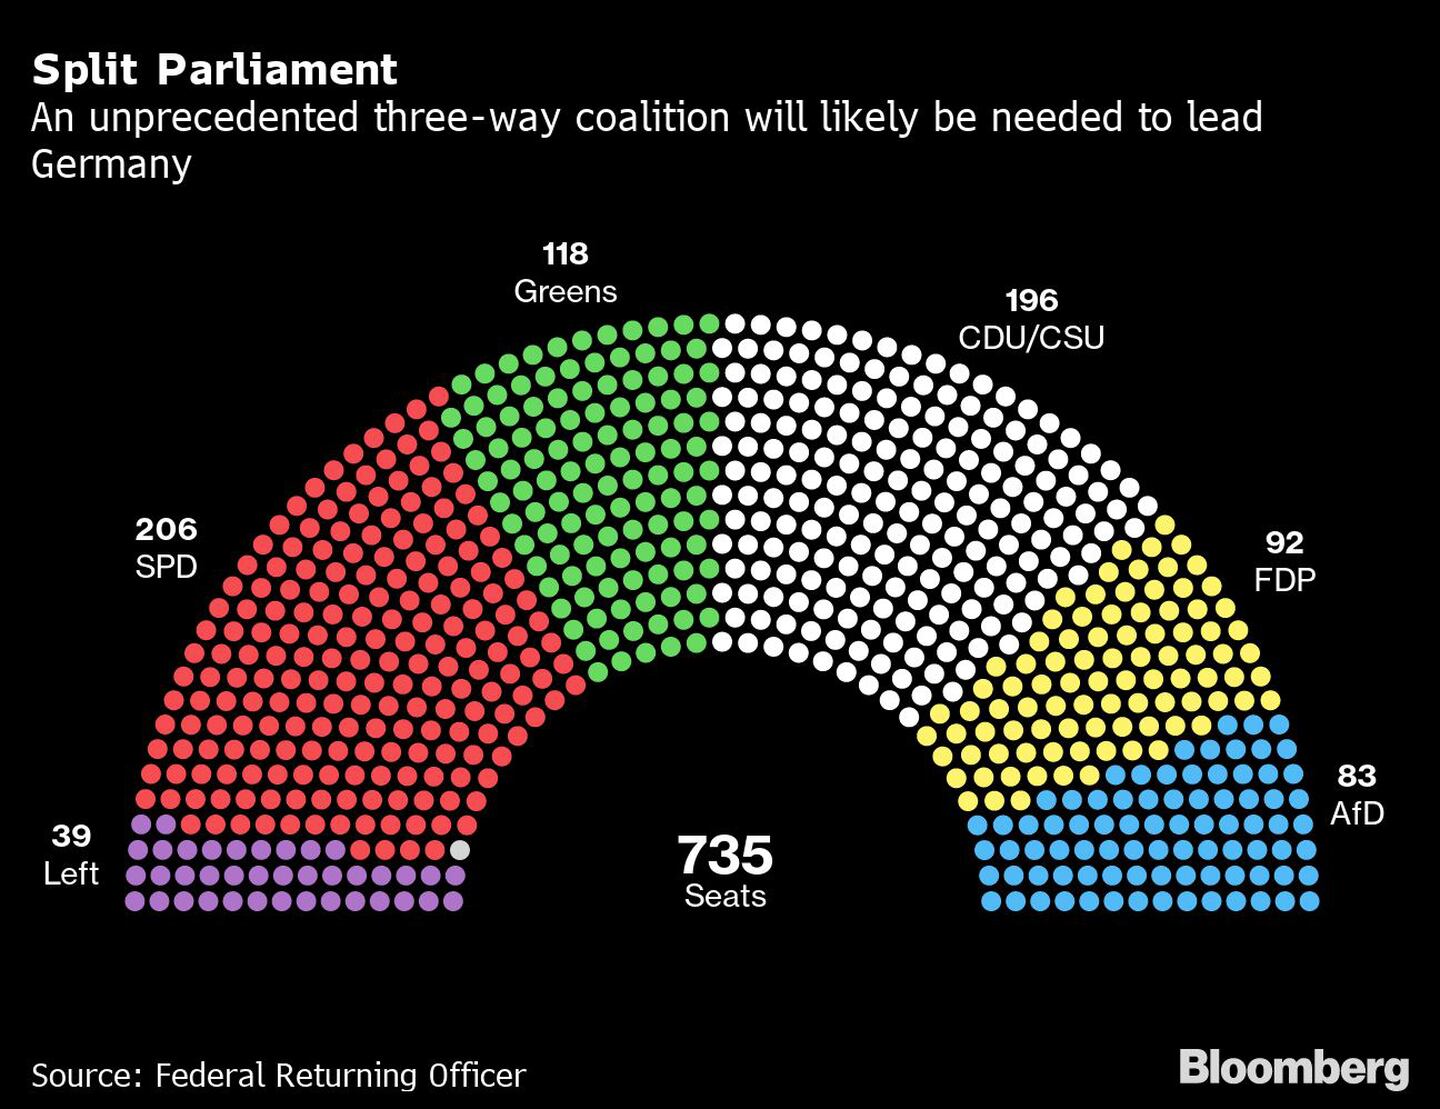 Una coalición de tres partidos será necesaria para liderar a Alemania, algo que no tiene precedentes.dfd